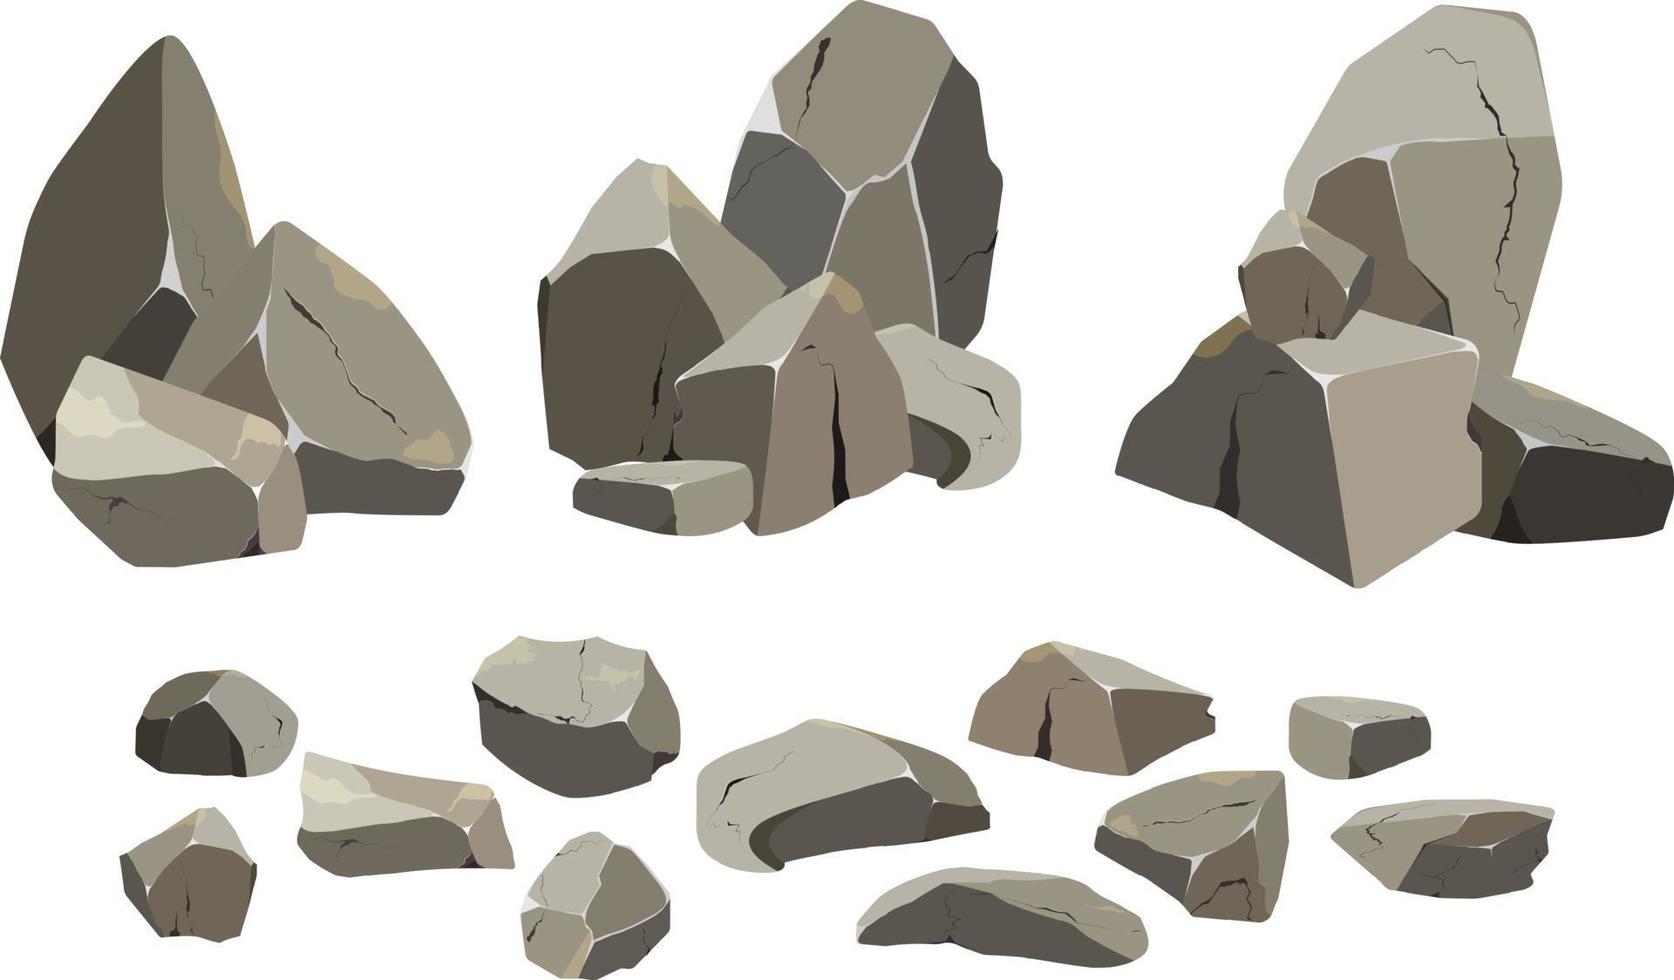 samling av stenar av olika former och buskar.kustnära småsten, kullerstenar, grus, mineraler och geologisk formationer.rock fragment, stenblock och byggnad material. vektor